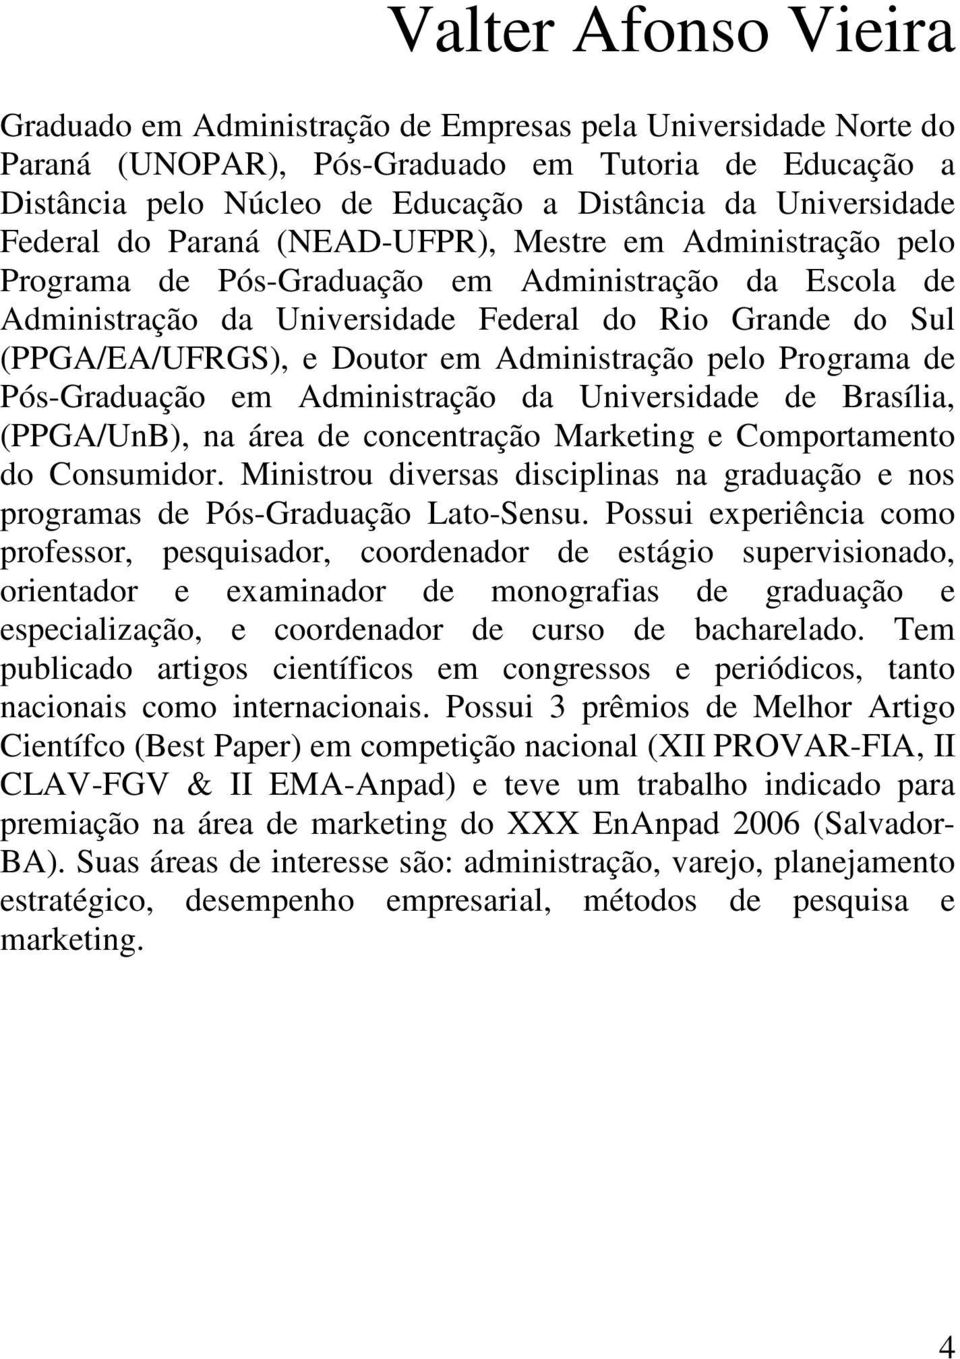 (PPGA/EA/UFRGS), e Doutor em Administração pelo Programa de Pós-Graduação em Administração da Universidade de Brasília, (PPGA/UnB), na área de concentração Marketing e Comportamento do Consumidor.